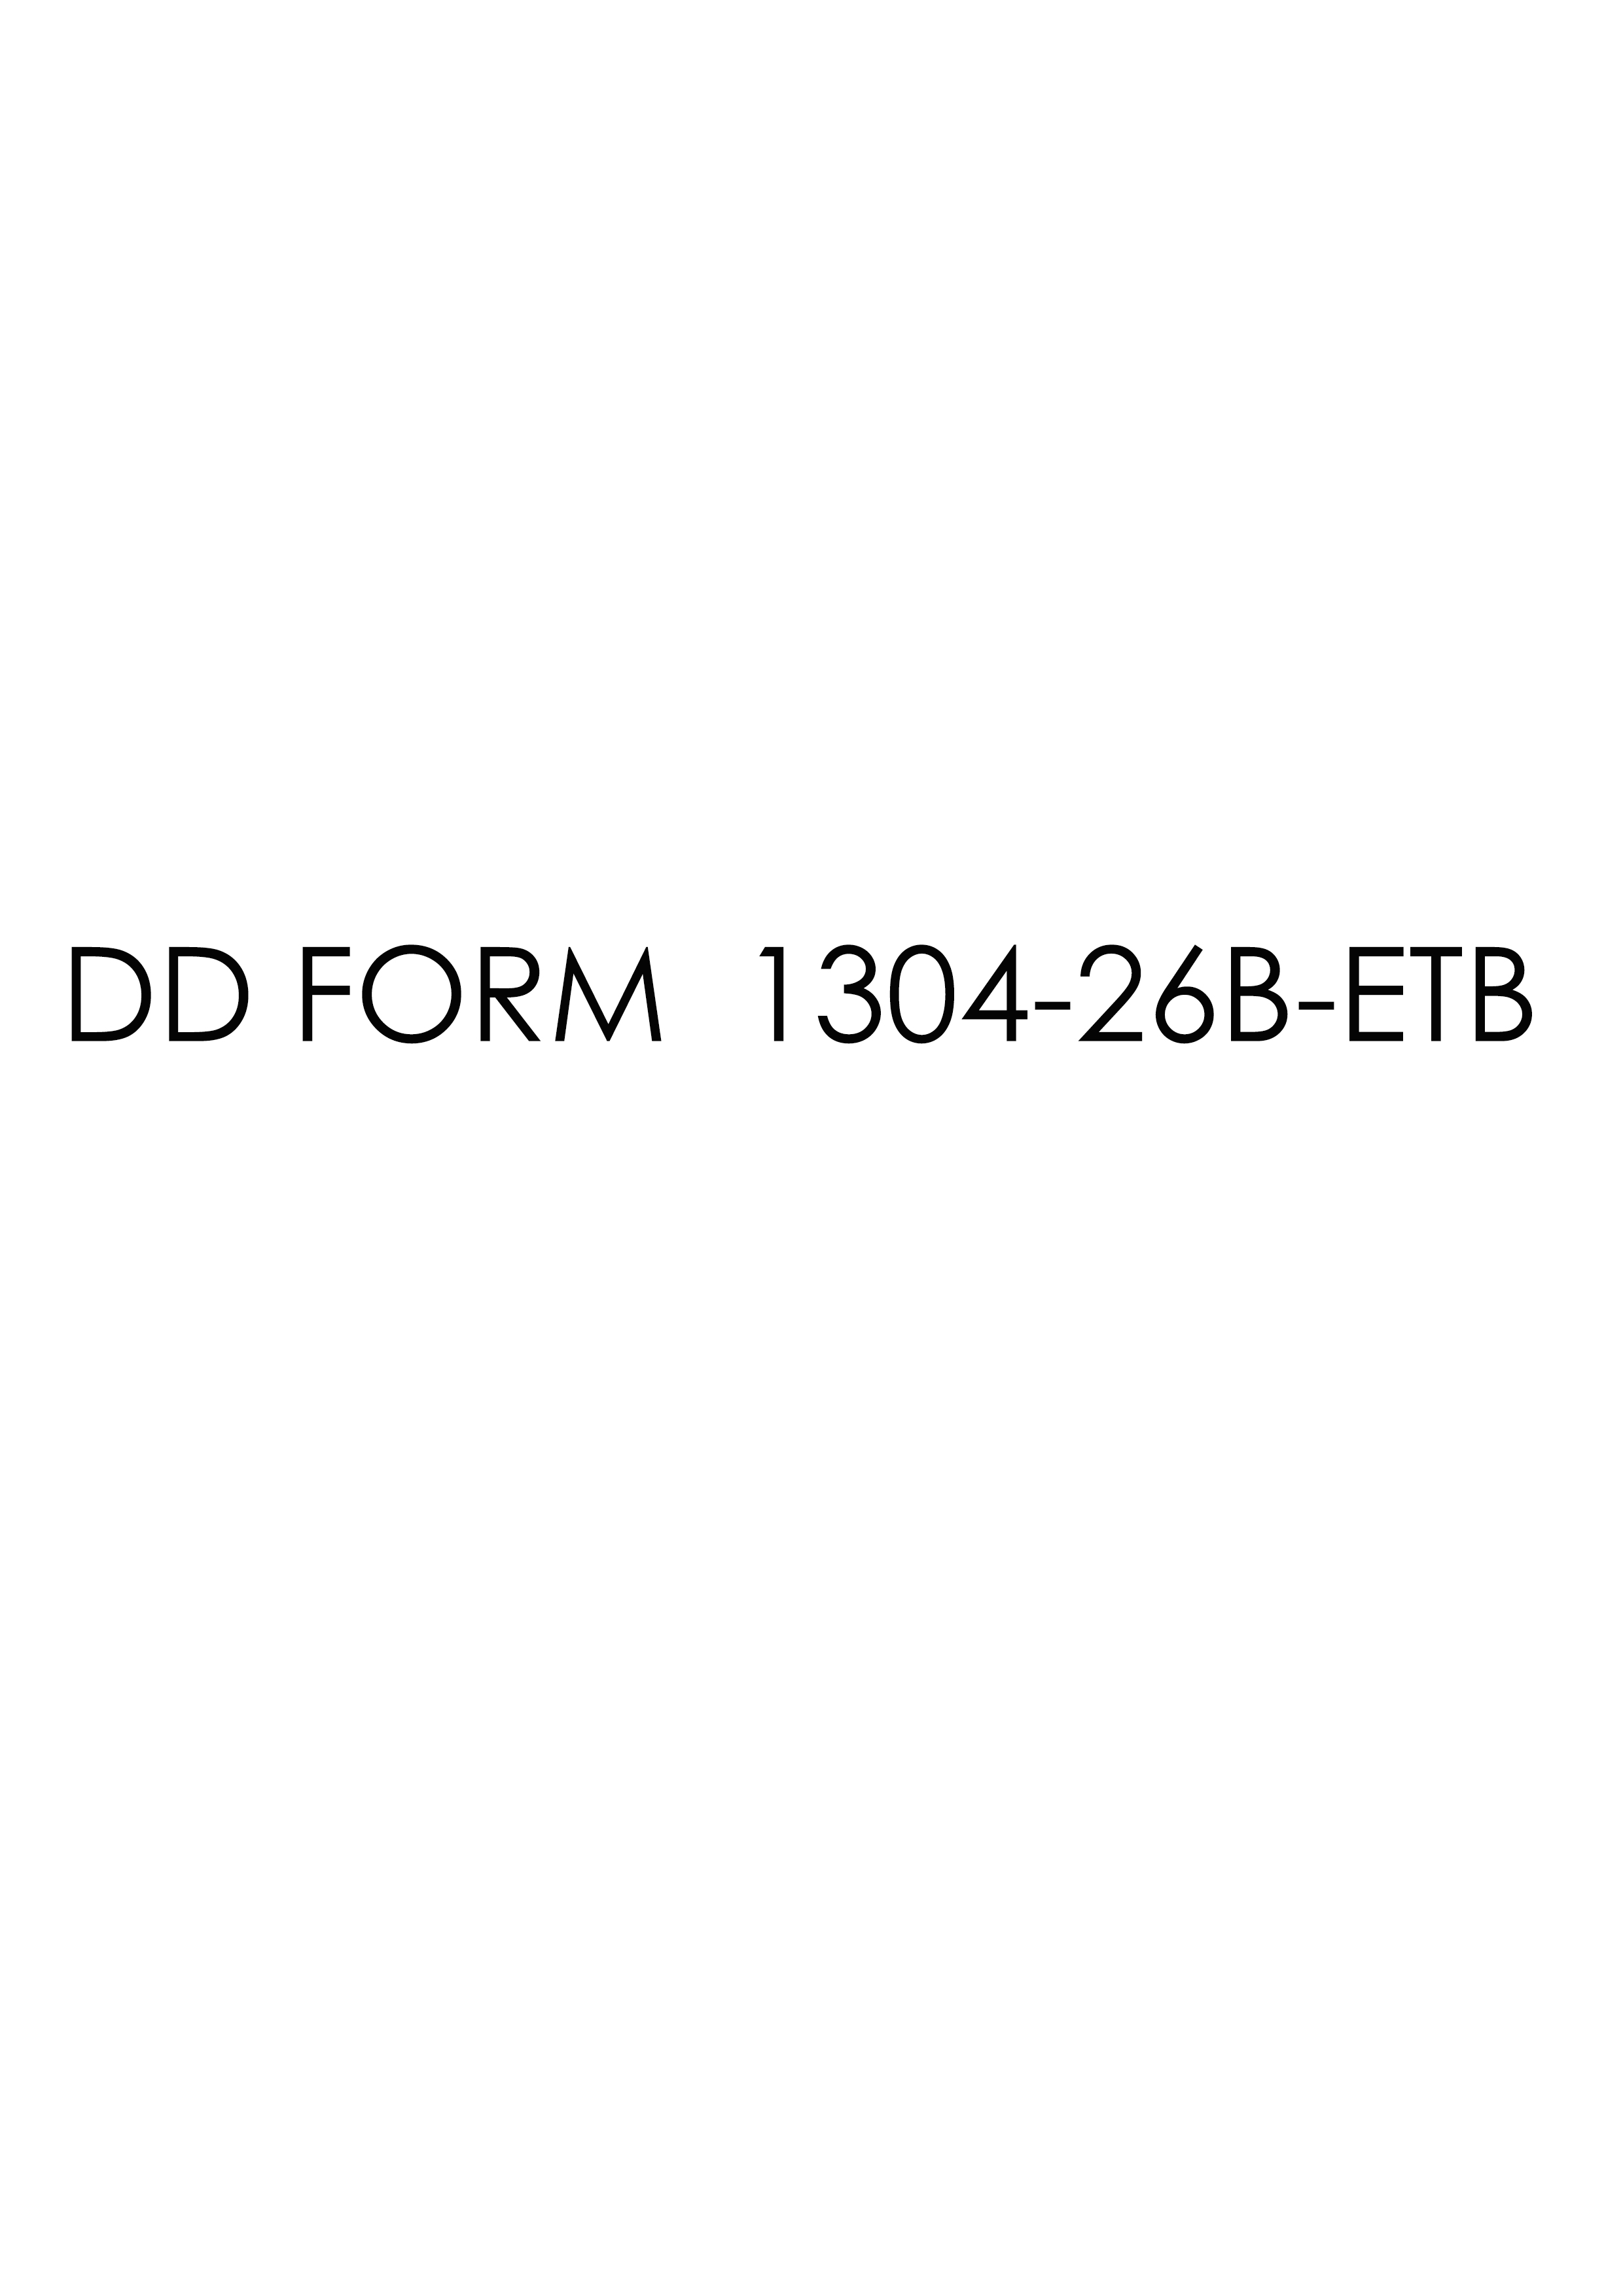 dd Form 1304-26B-ETB fillable